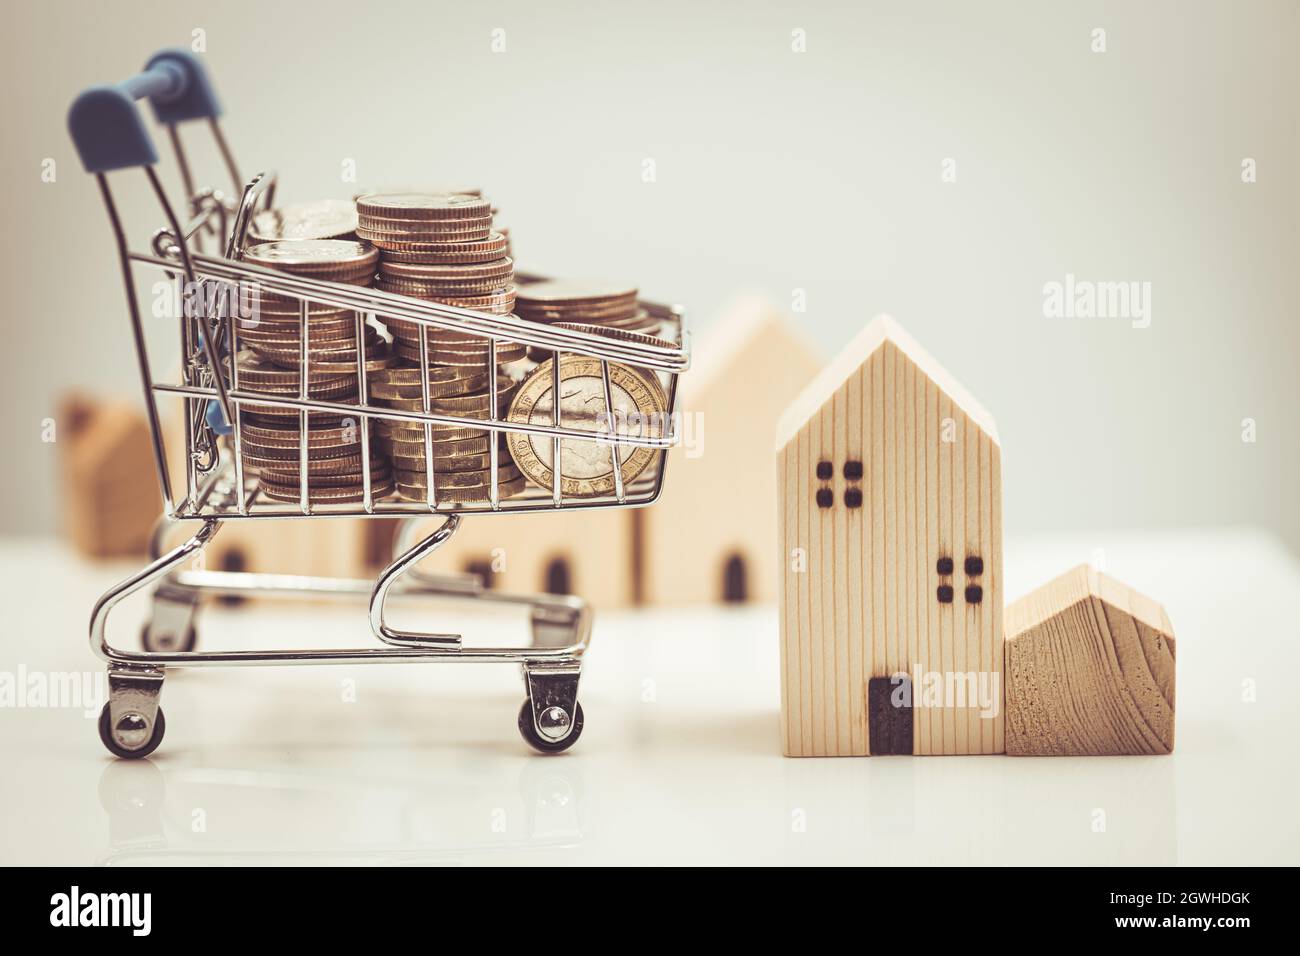 Kaufen Sie ein neues Haus, Shopping-House-Verkauf mit Geldwagen Trolley für Hypothek und Darlehen Konzept. Stockfoto